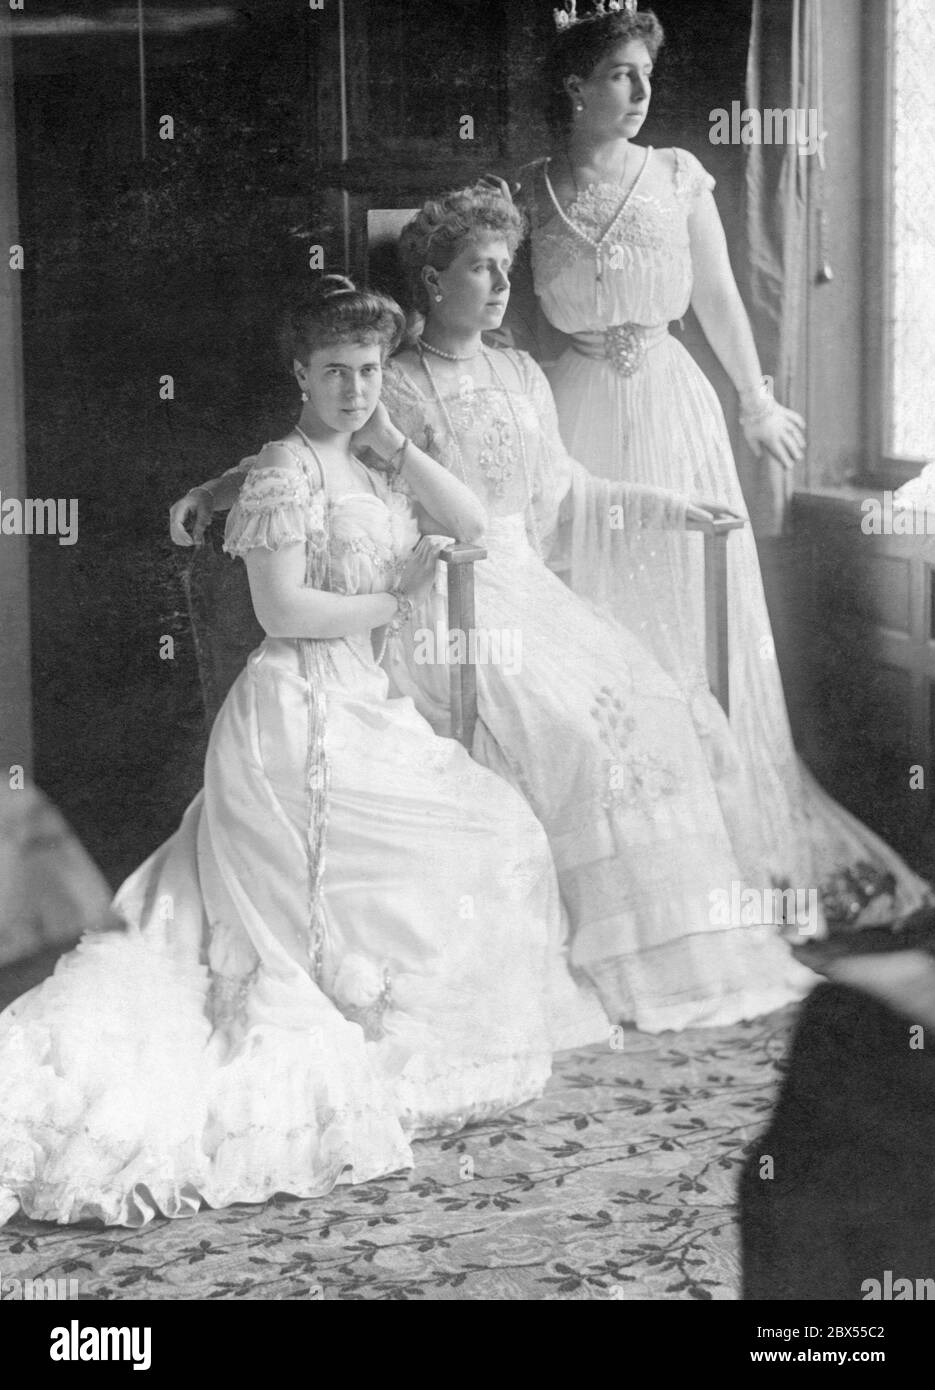 Von links nach rechts: Prinzessin Beatrice, Kronprinzessin Marie von Rumänien und Großherzogin Cyril. Undated Foto. Stockfoto